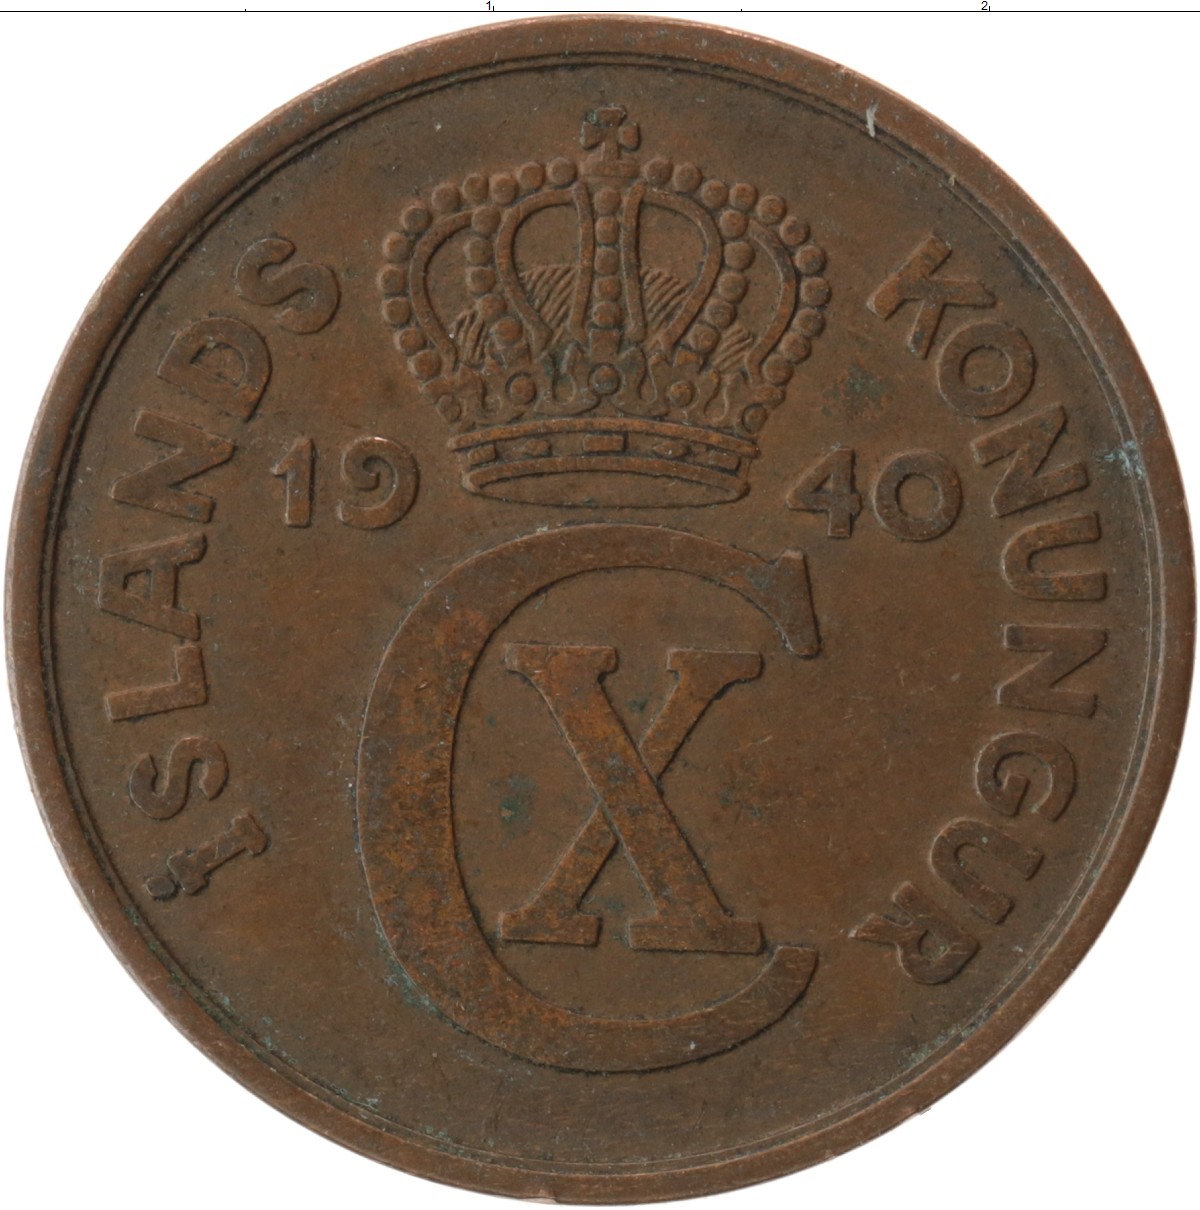 Клуб нумизмат монеты. Монета Дании алюминиевая бронза 5 эре. Монеты в клубе Нумизмат. 25 Эре 1921.